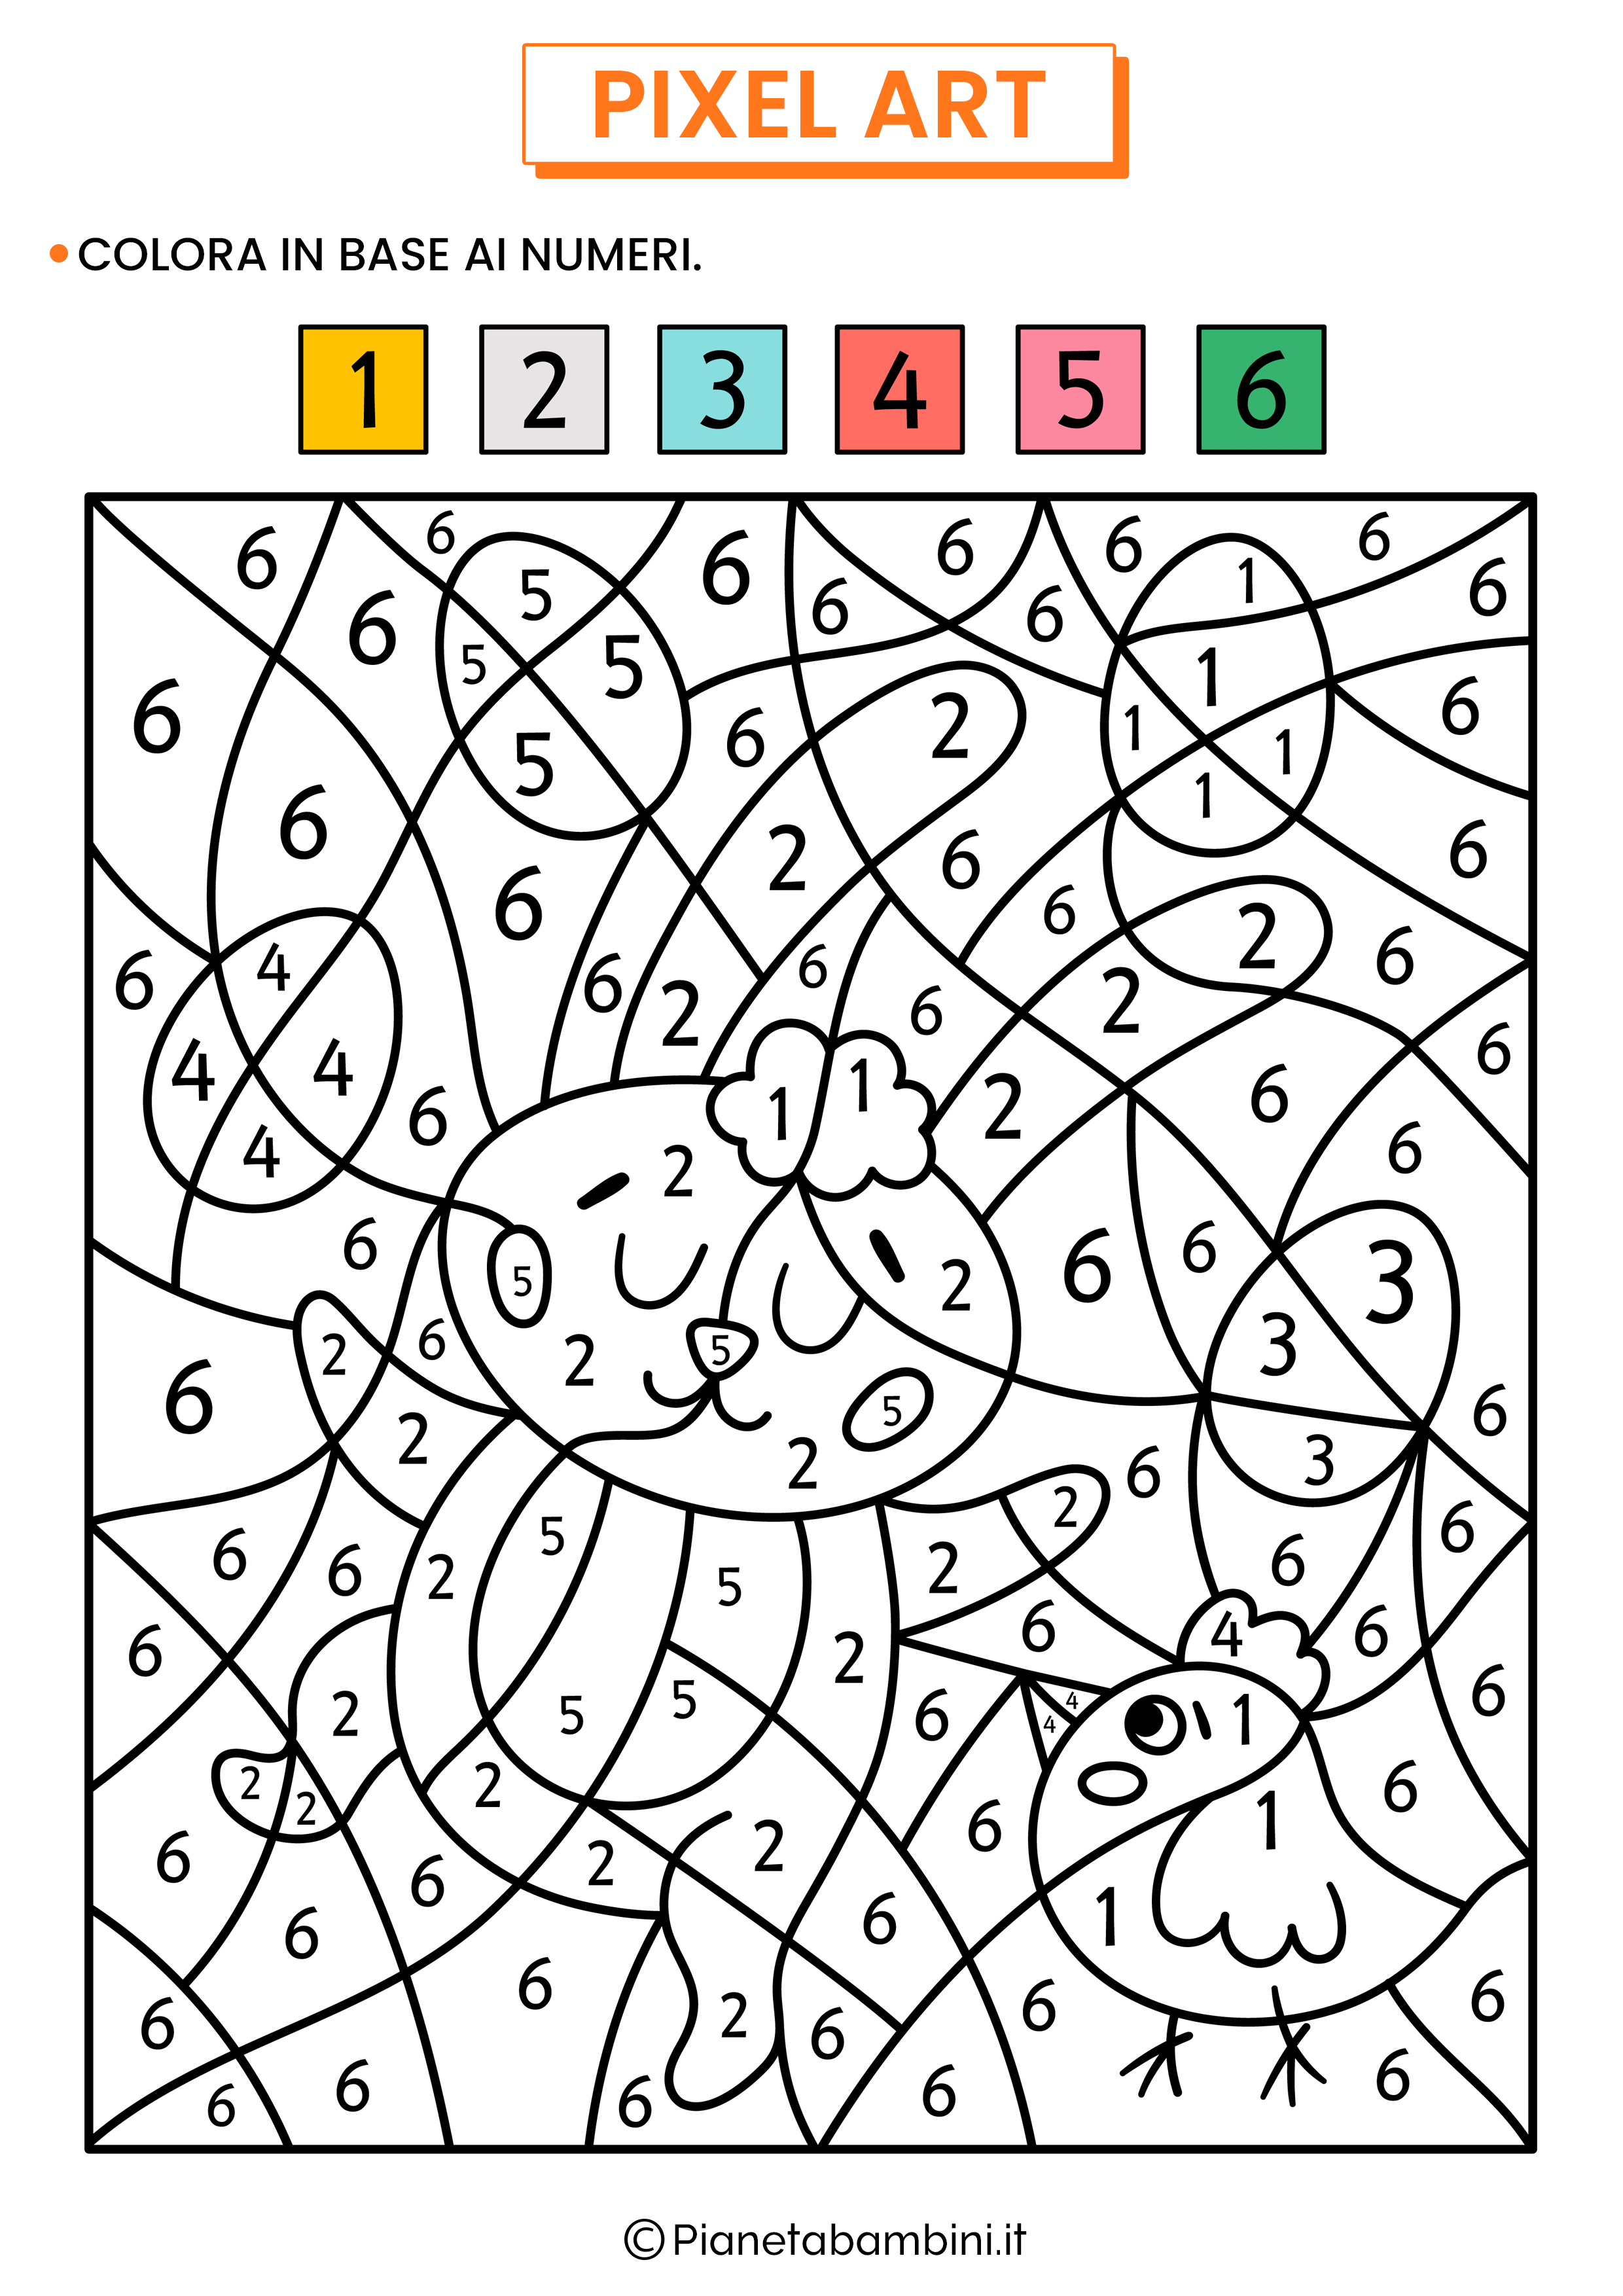 Pixel Art Pasqua Colora Numeri 02